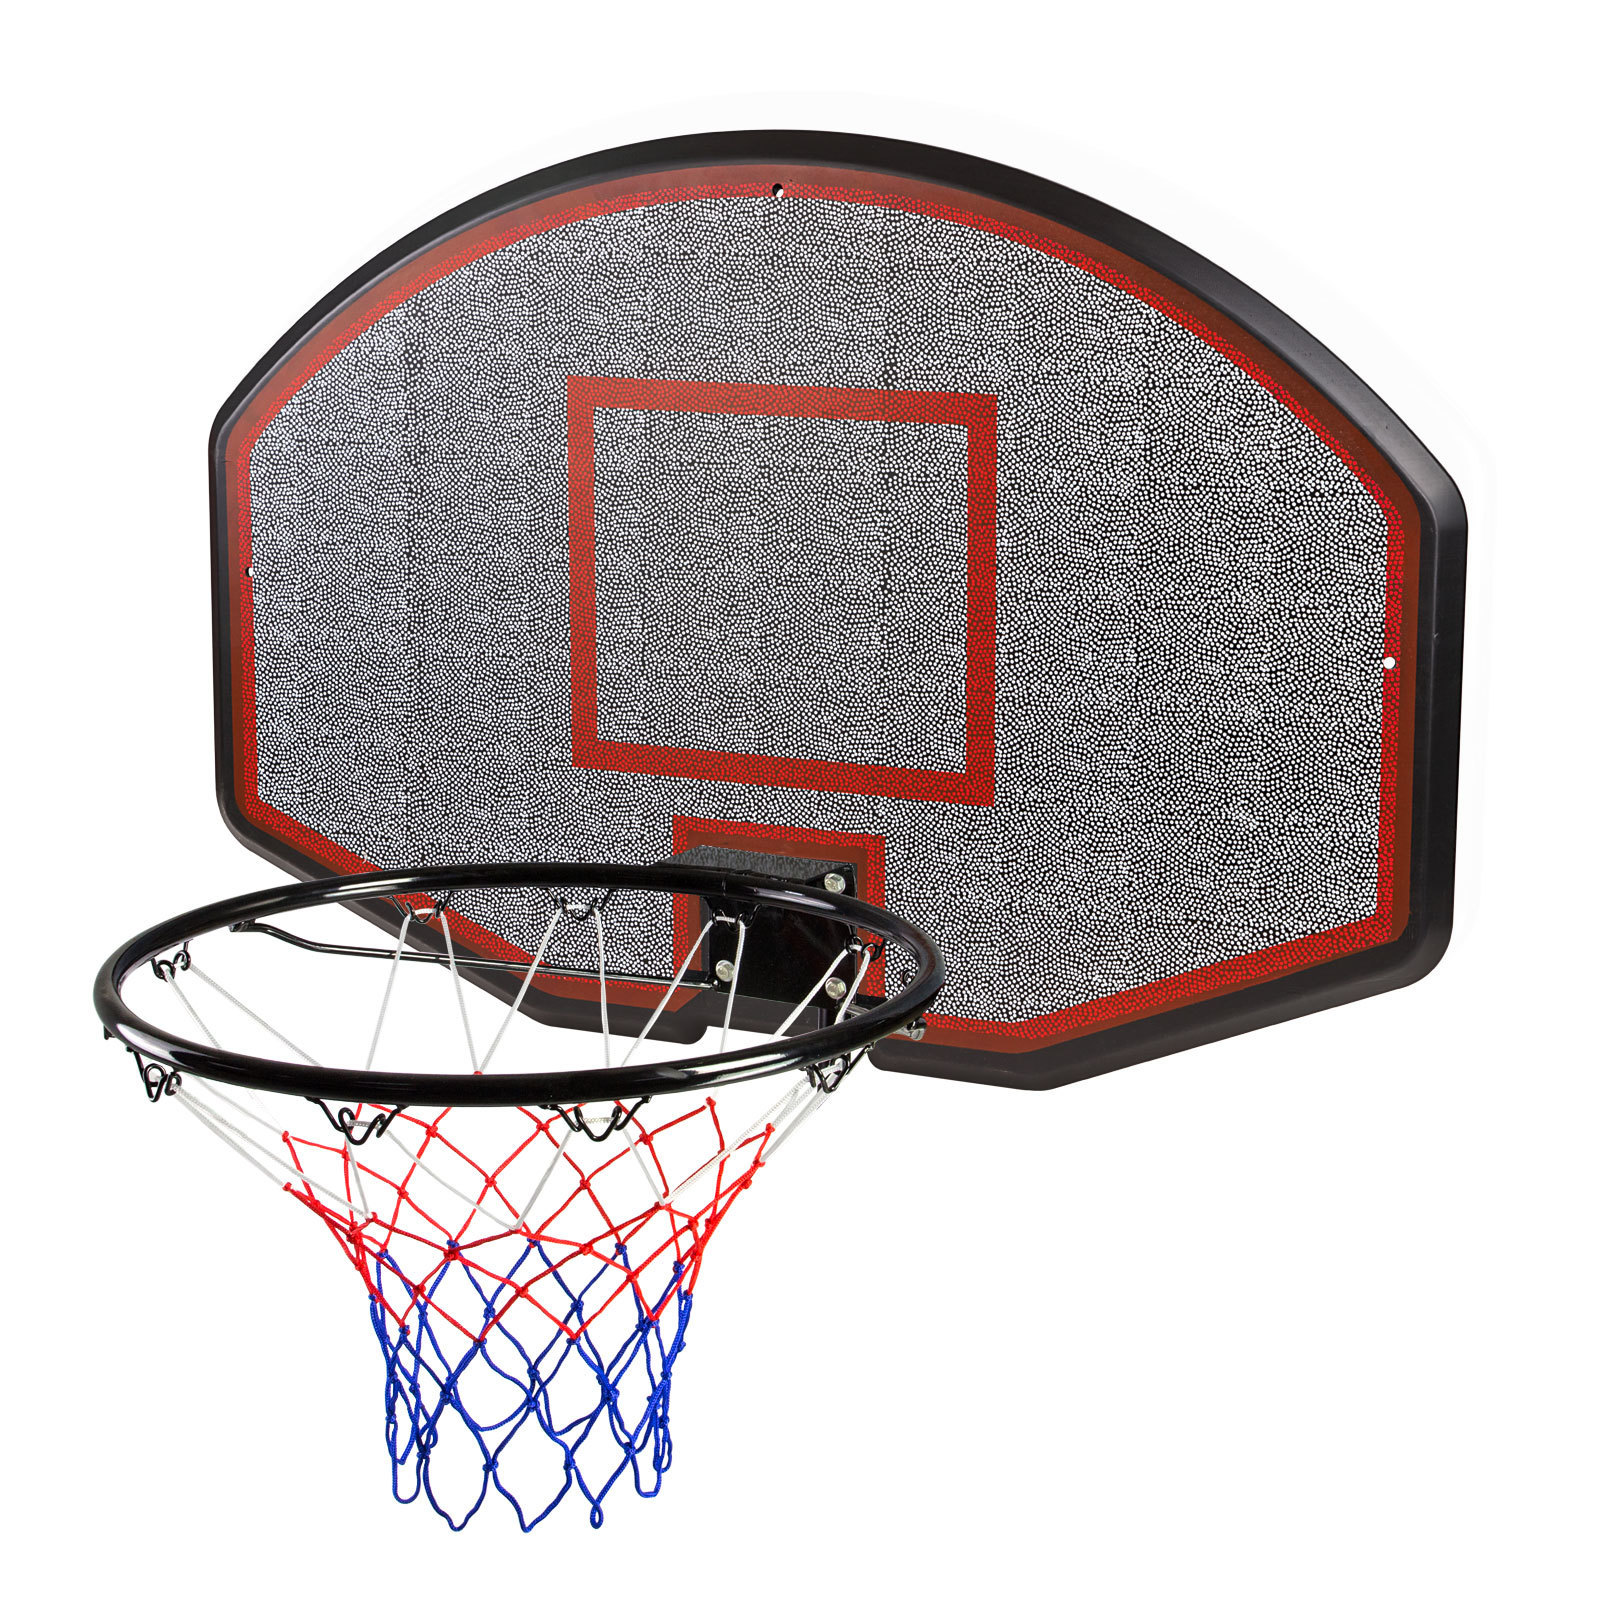 DEMA Basketballbrett mit Ring und Netz